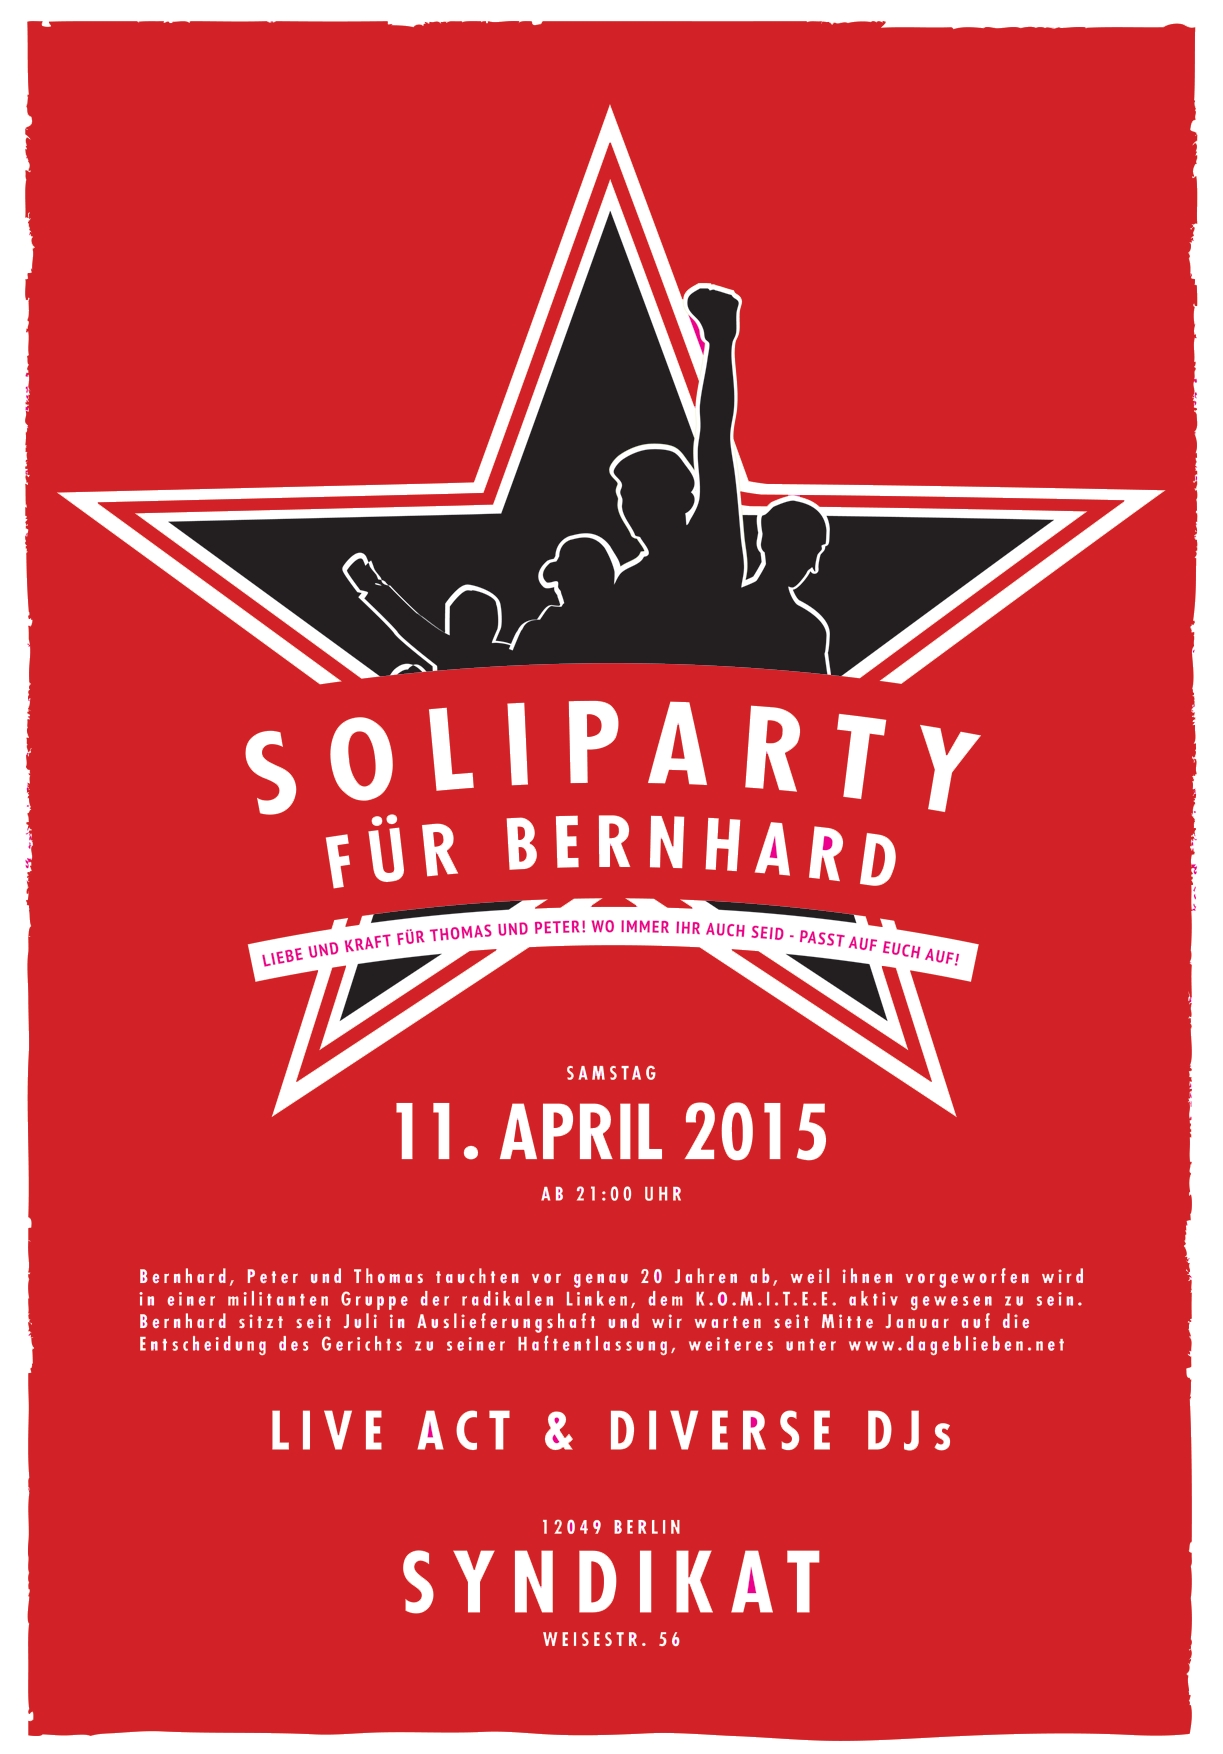 [BERLIN] Samstag 11.04. Soliparty für Bernhard